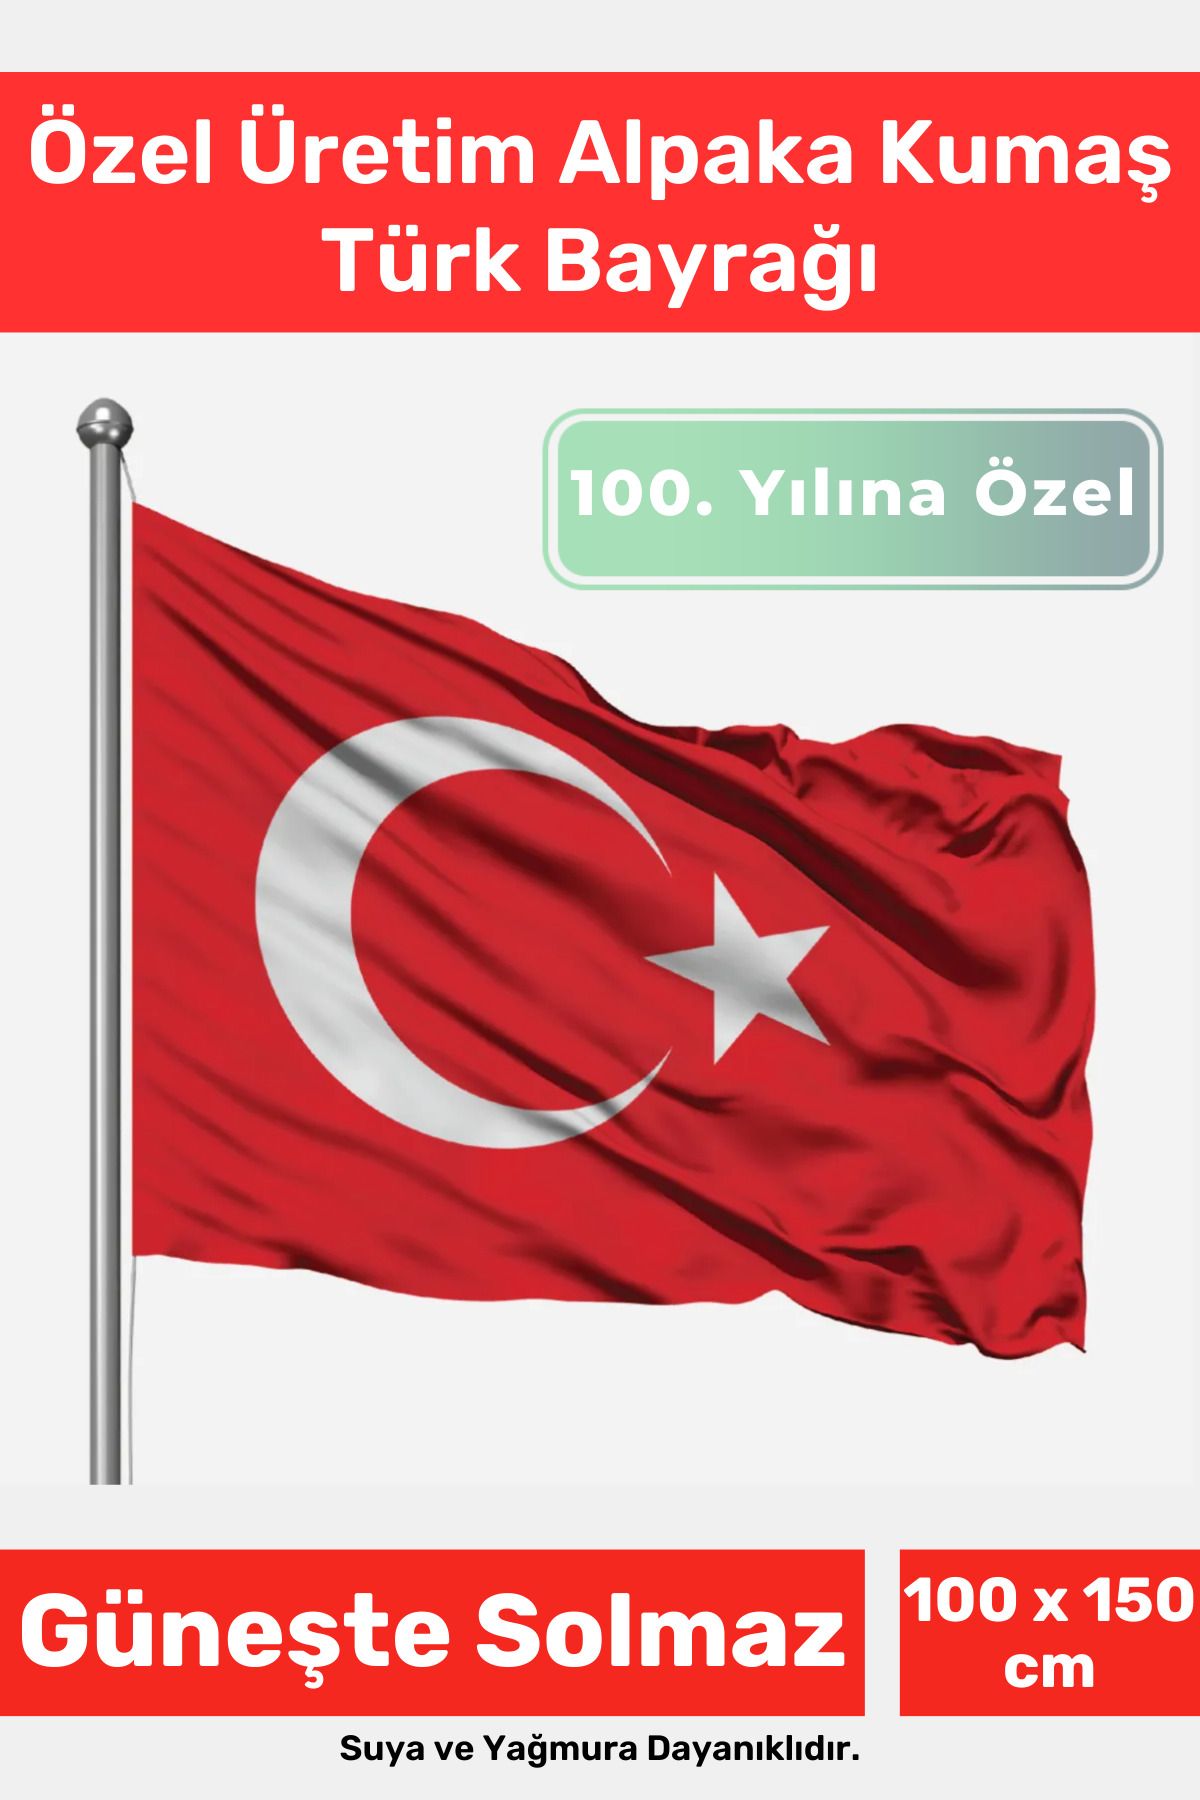 Carlburn Özel Suya Güneşe Sopa Takılabilir Çıkarılabilir Dayanıklı Alpaka Kumaş 100x150 cm Türk Bayrağı Flag